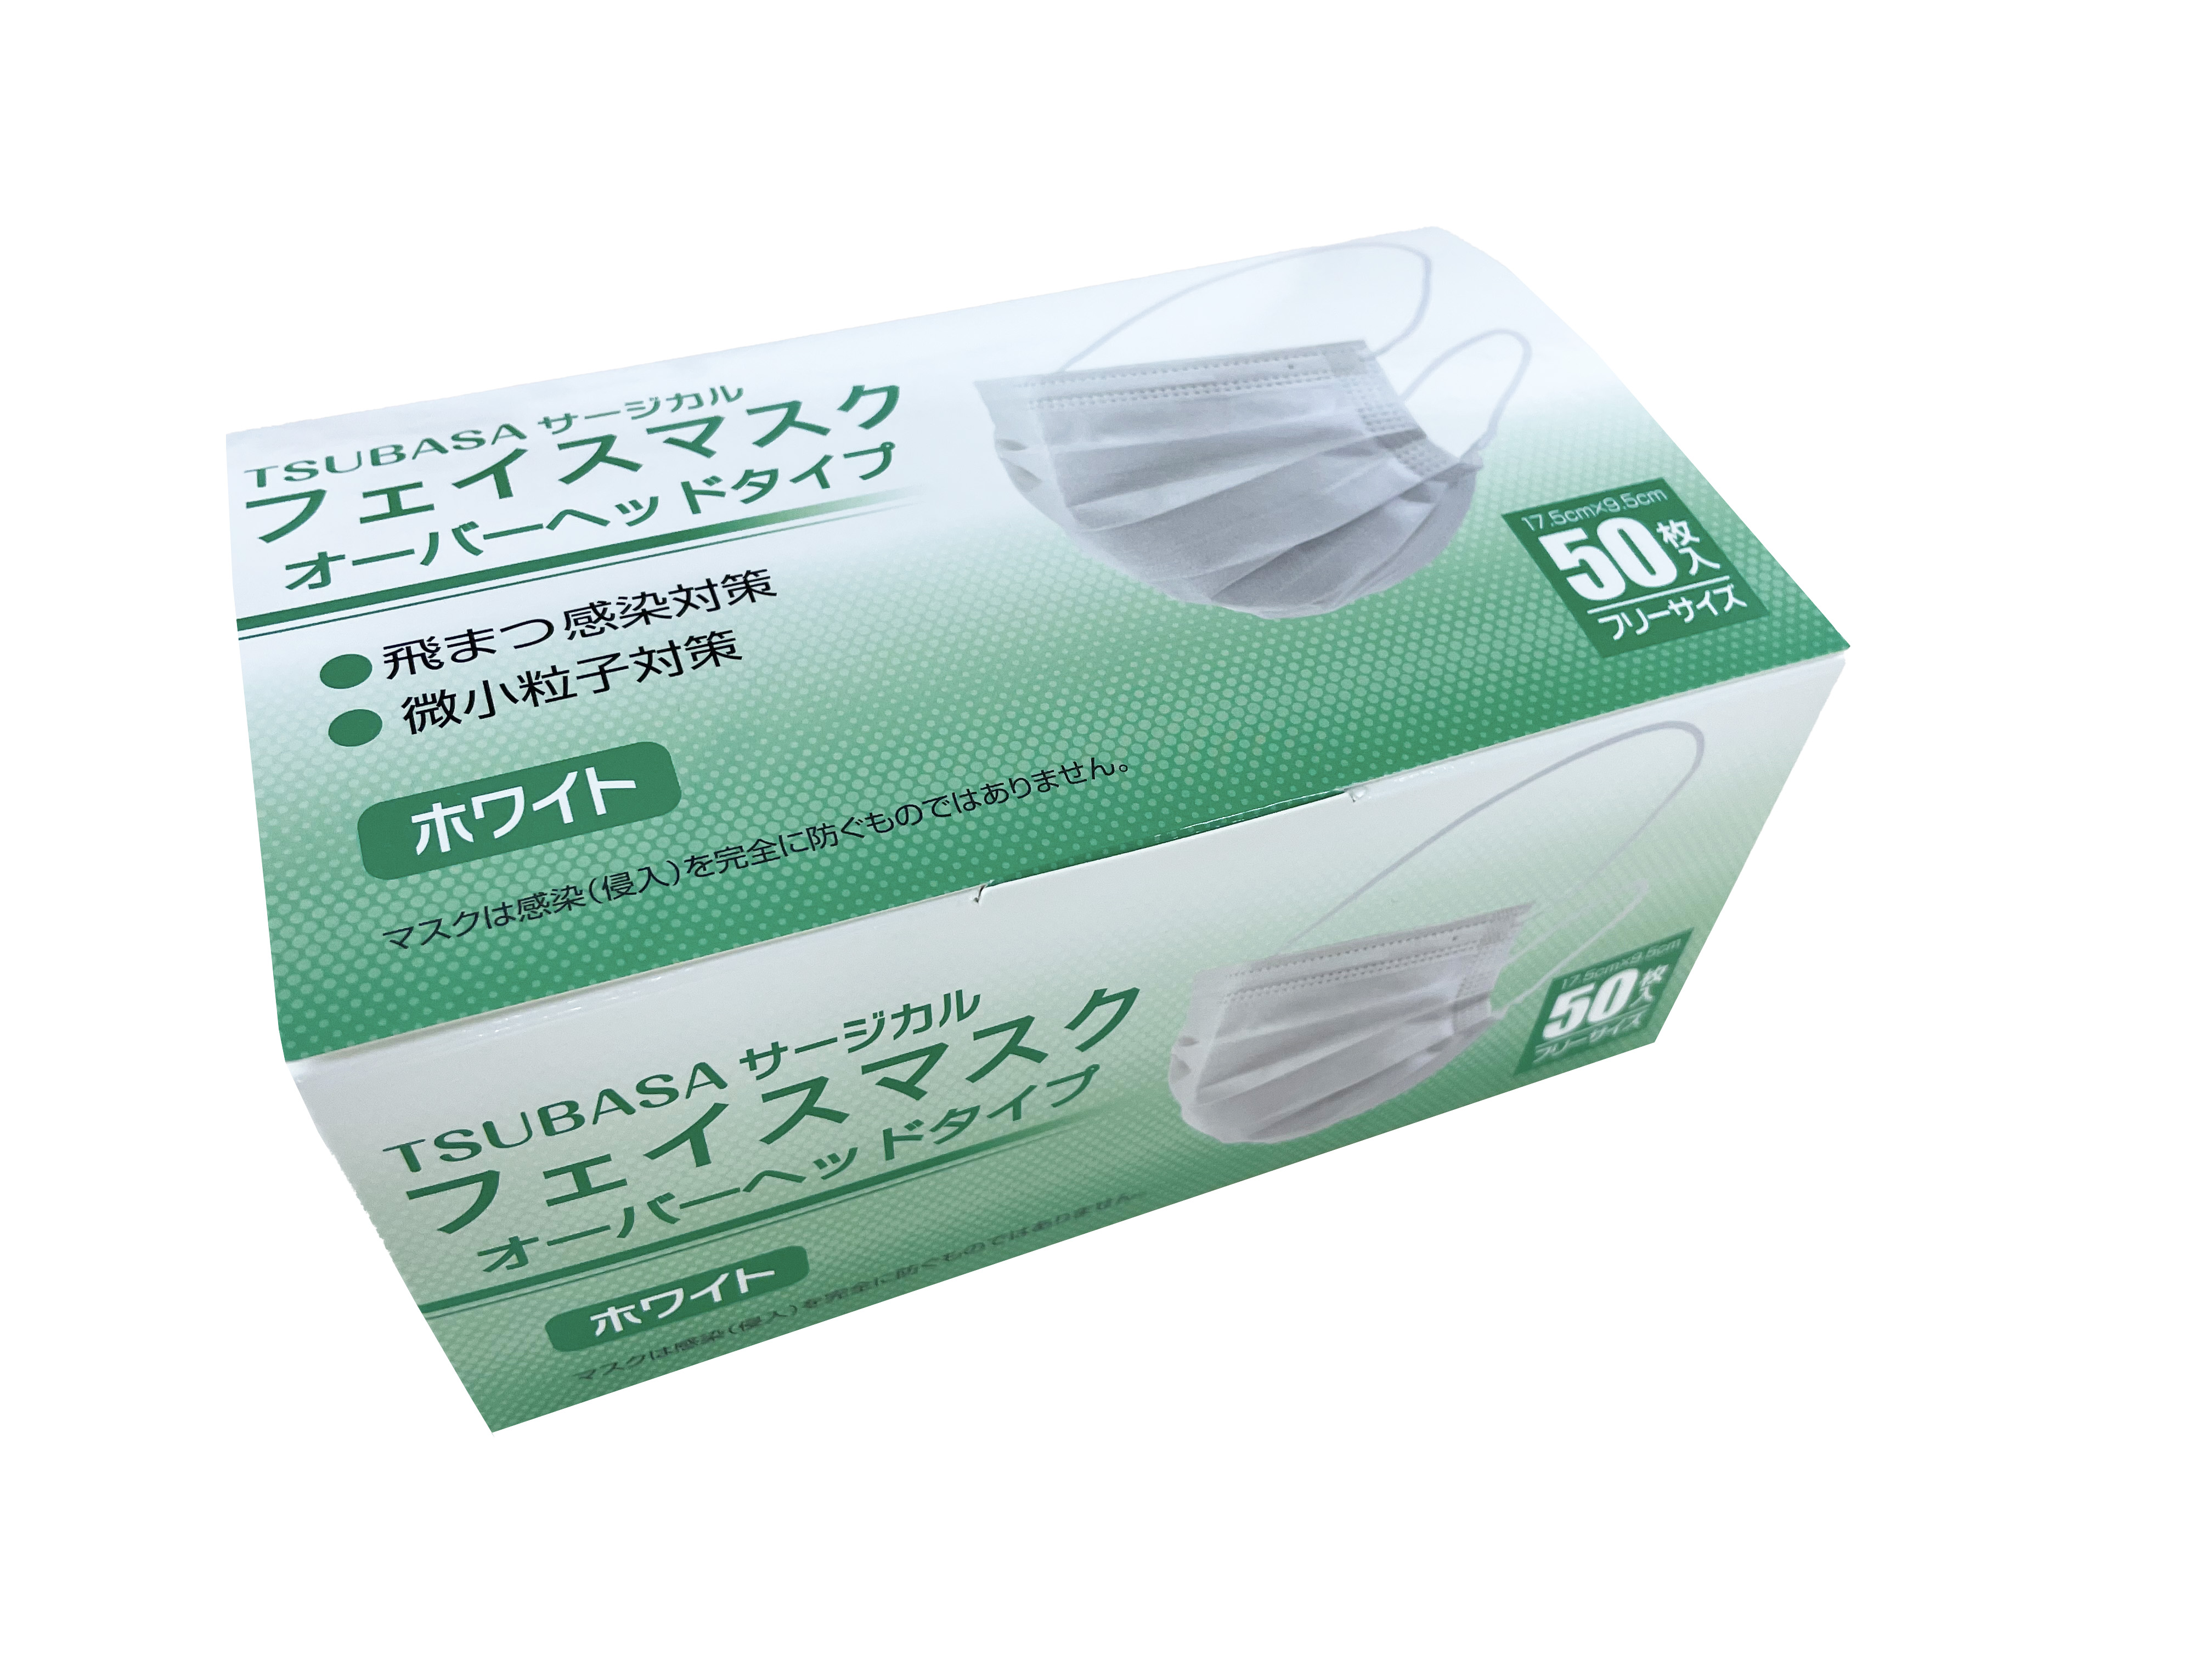 フェイスマスク(フリーサイズ・50枚入り) 【JIS T9001適合審査合格品